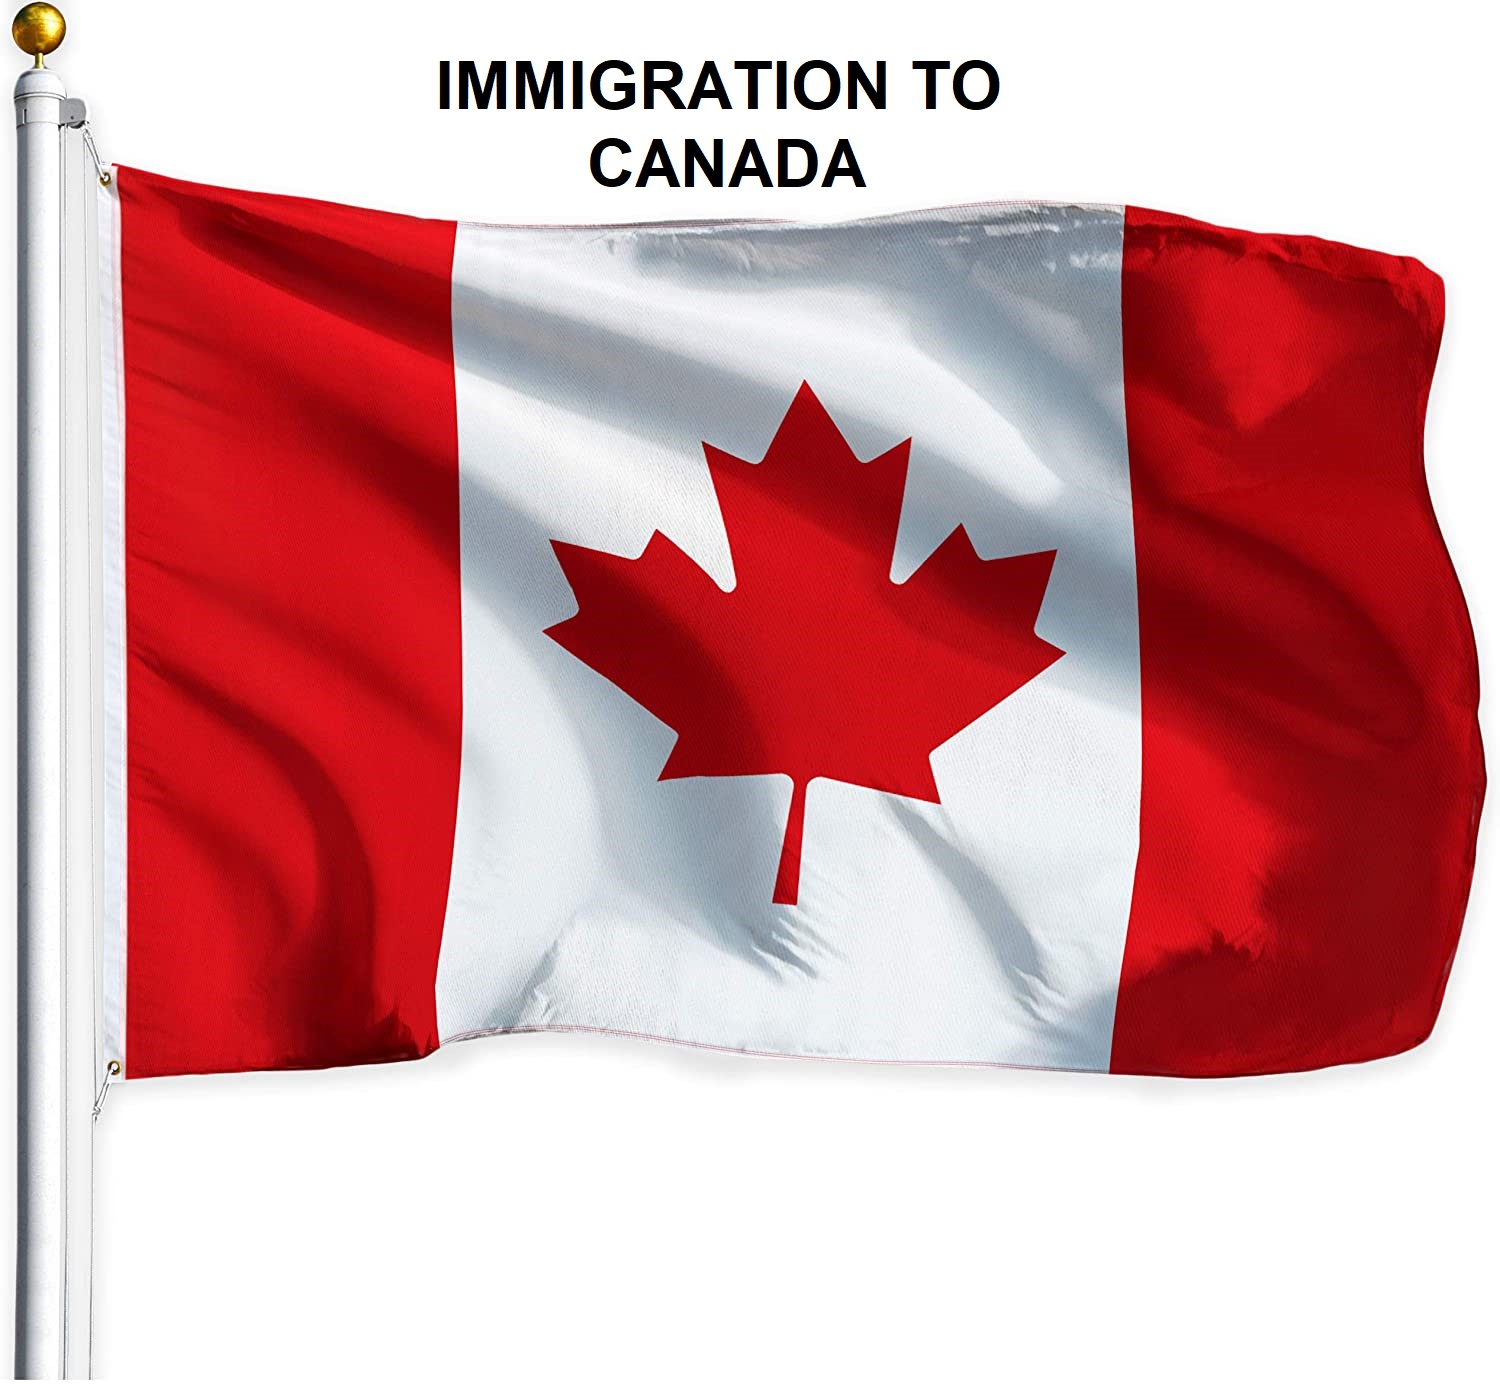 لأول مرة في العالم، كندا تصدر برنامجاً خاصاً للجوء